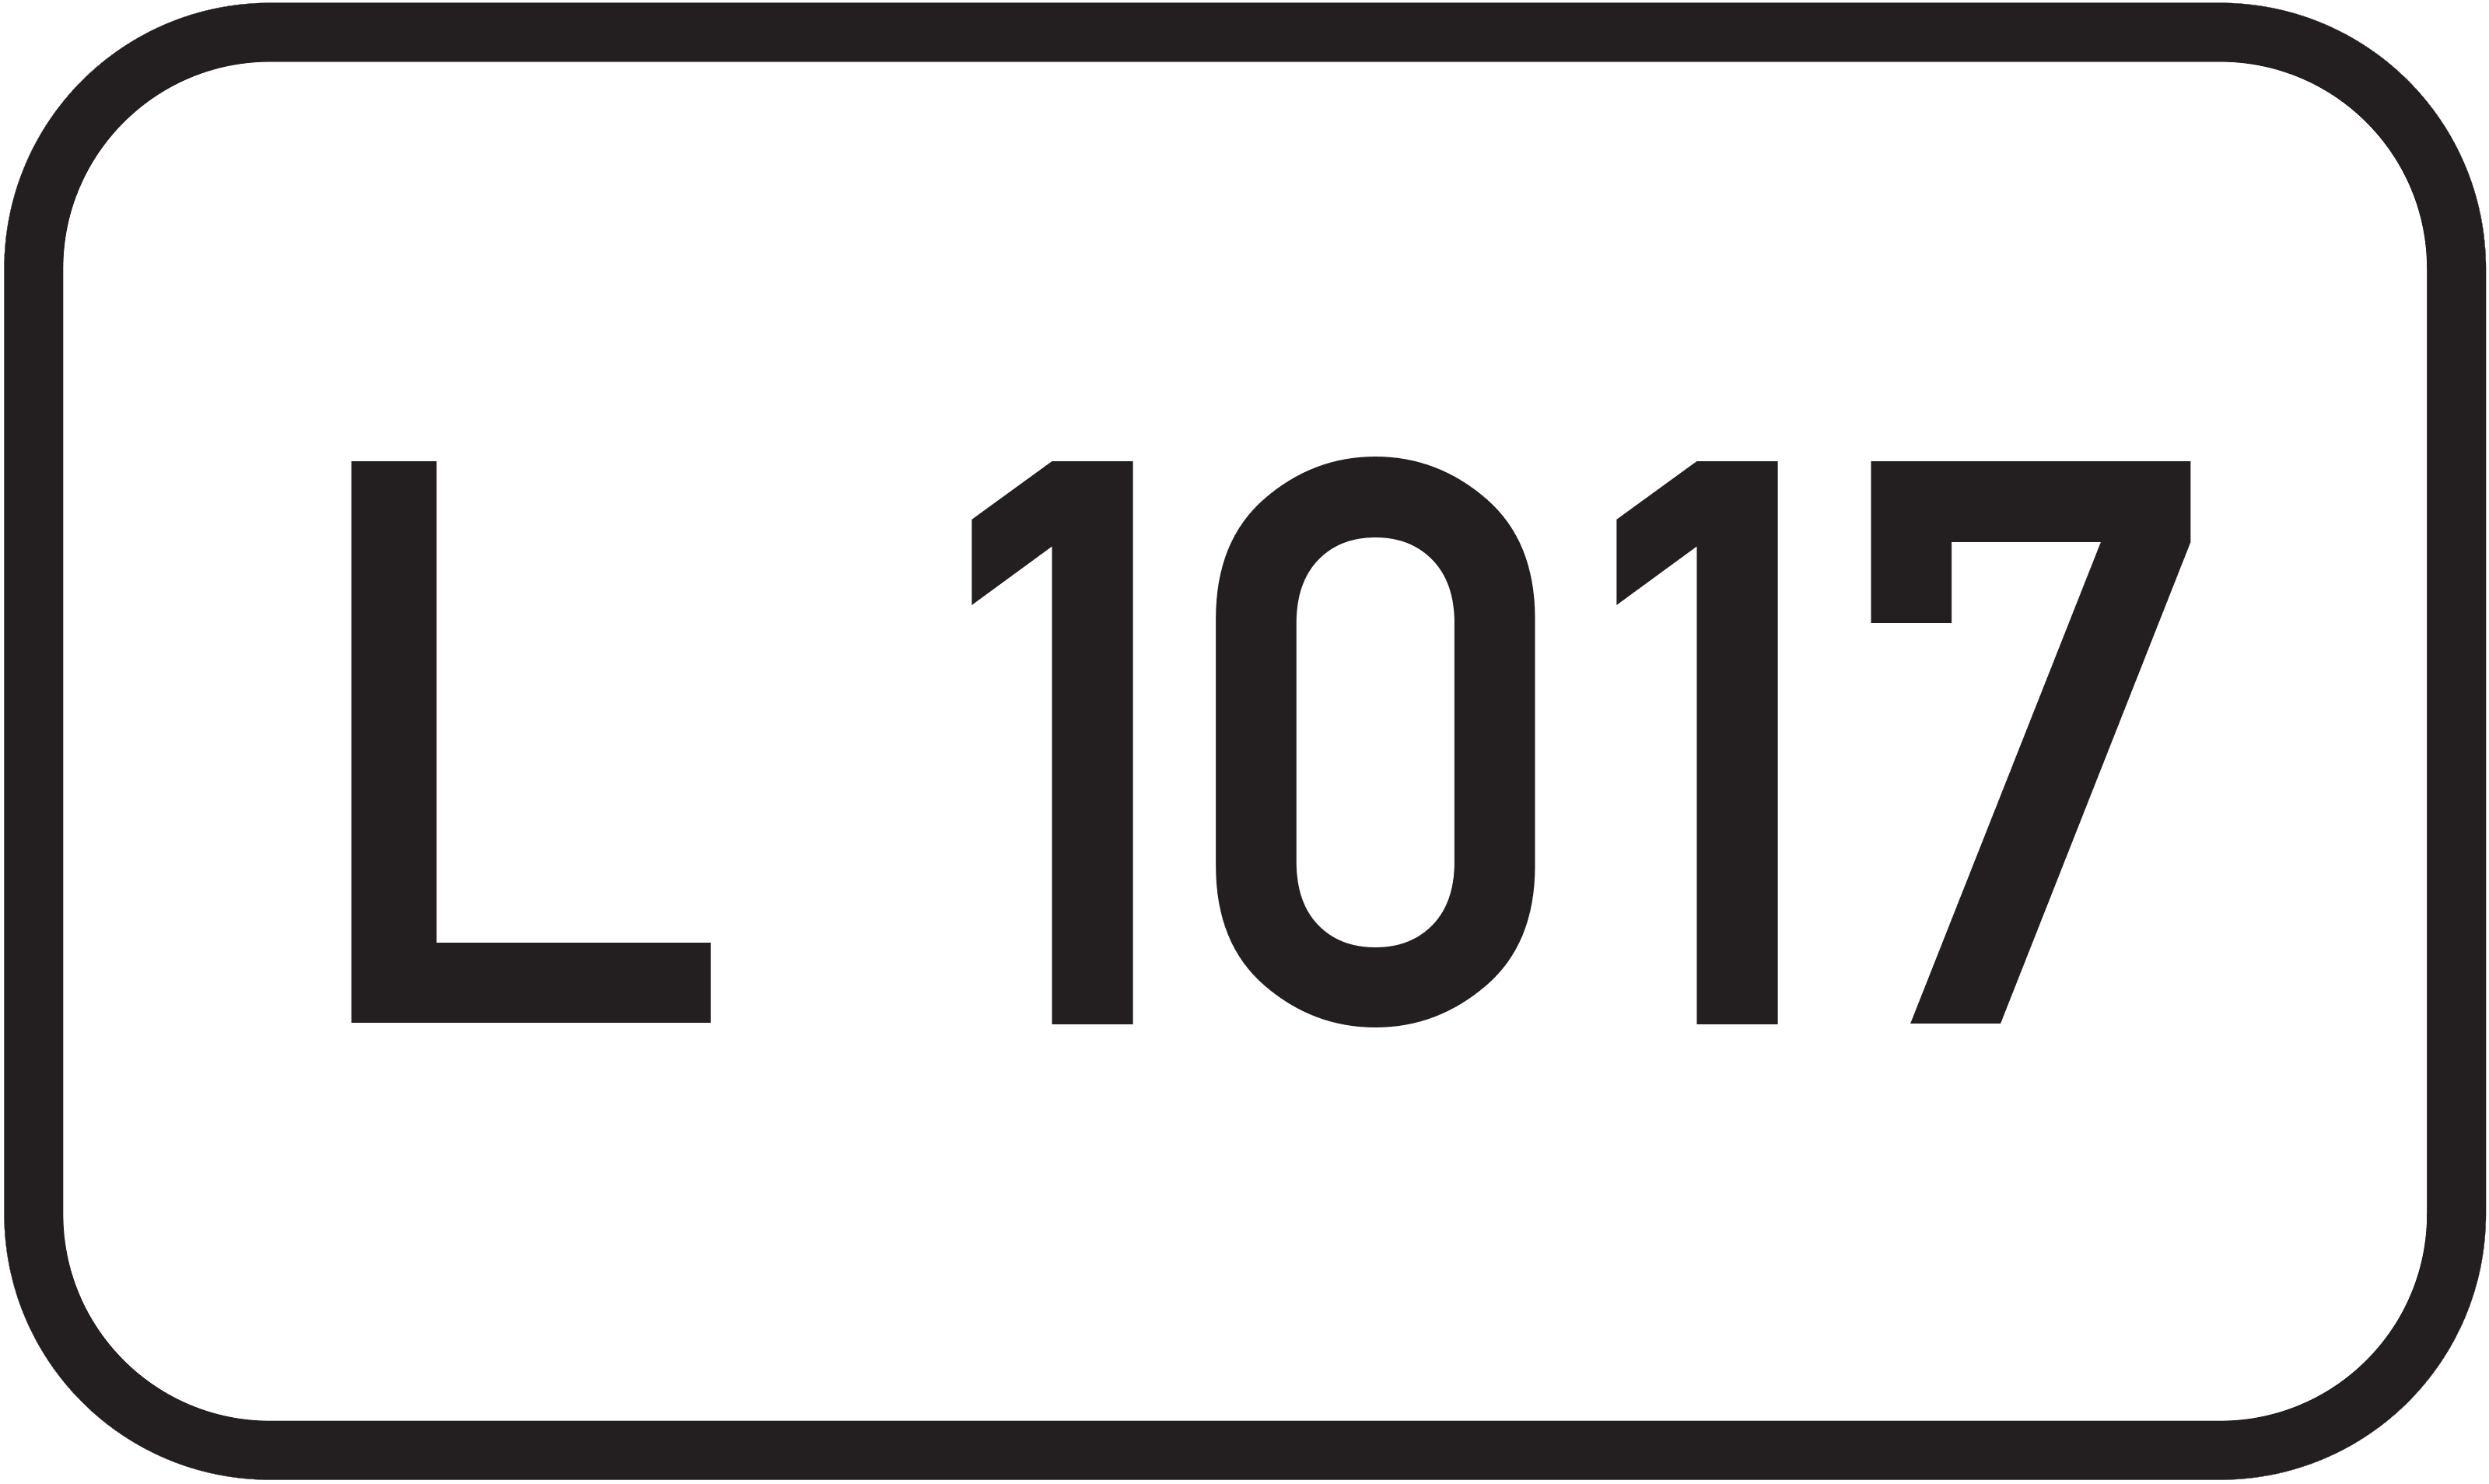 Landesstraße L 1017